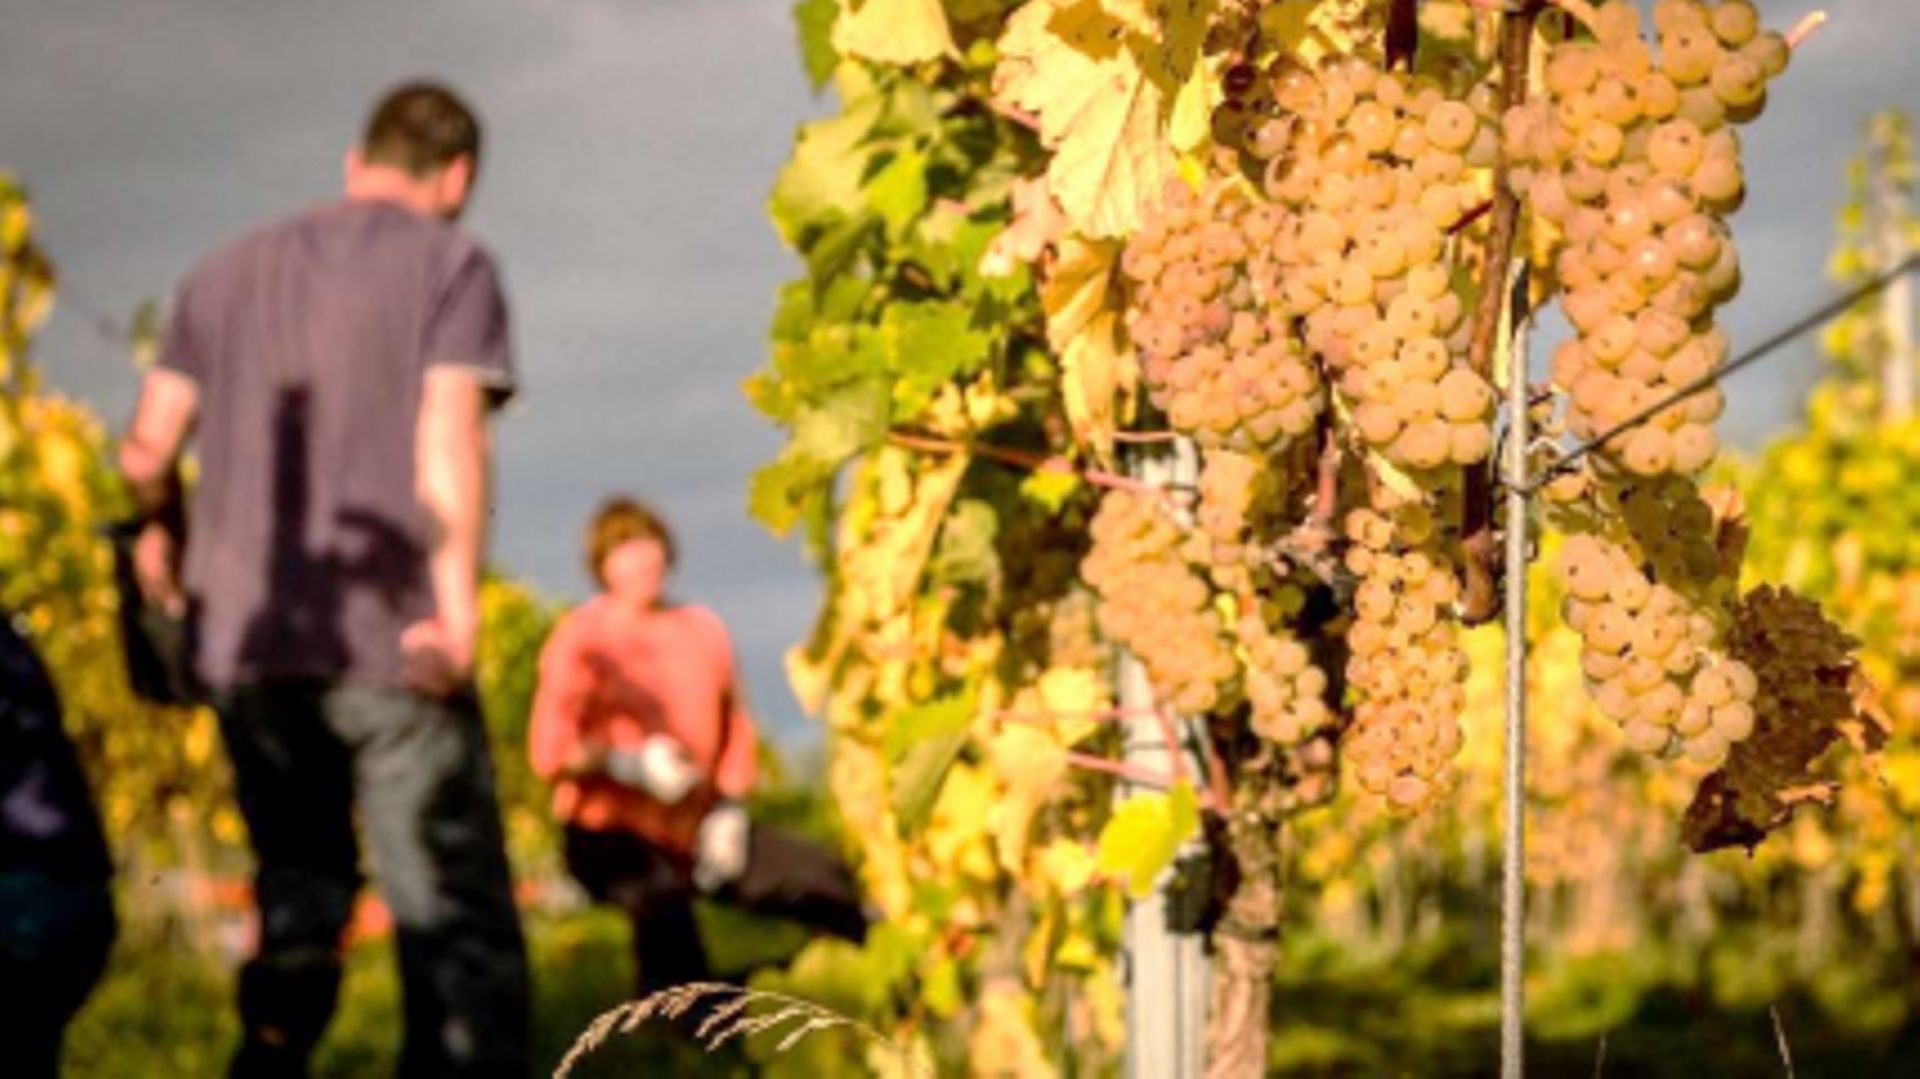 A Heure-le-Romain, la coopérative Vin de Liège monte en puissance.